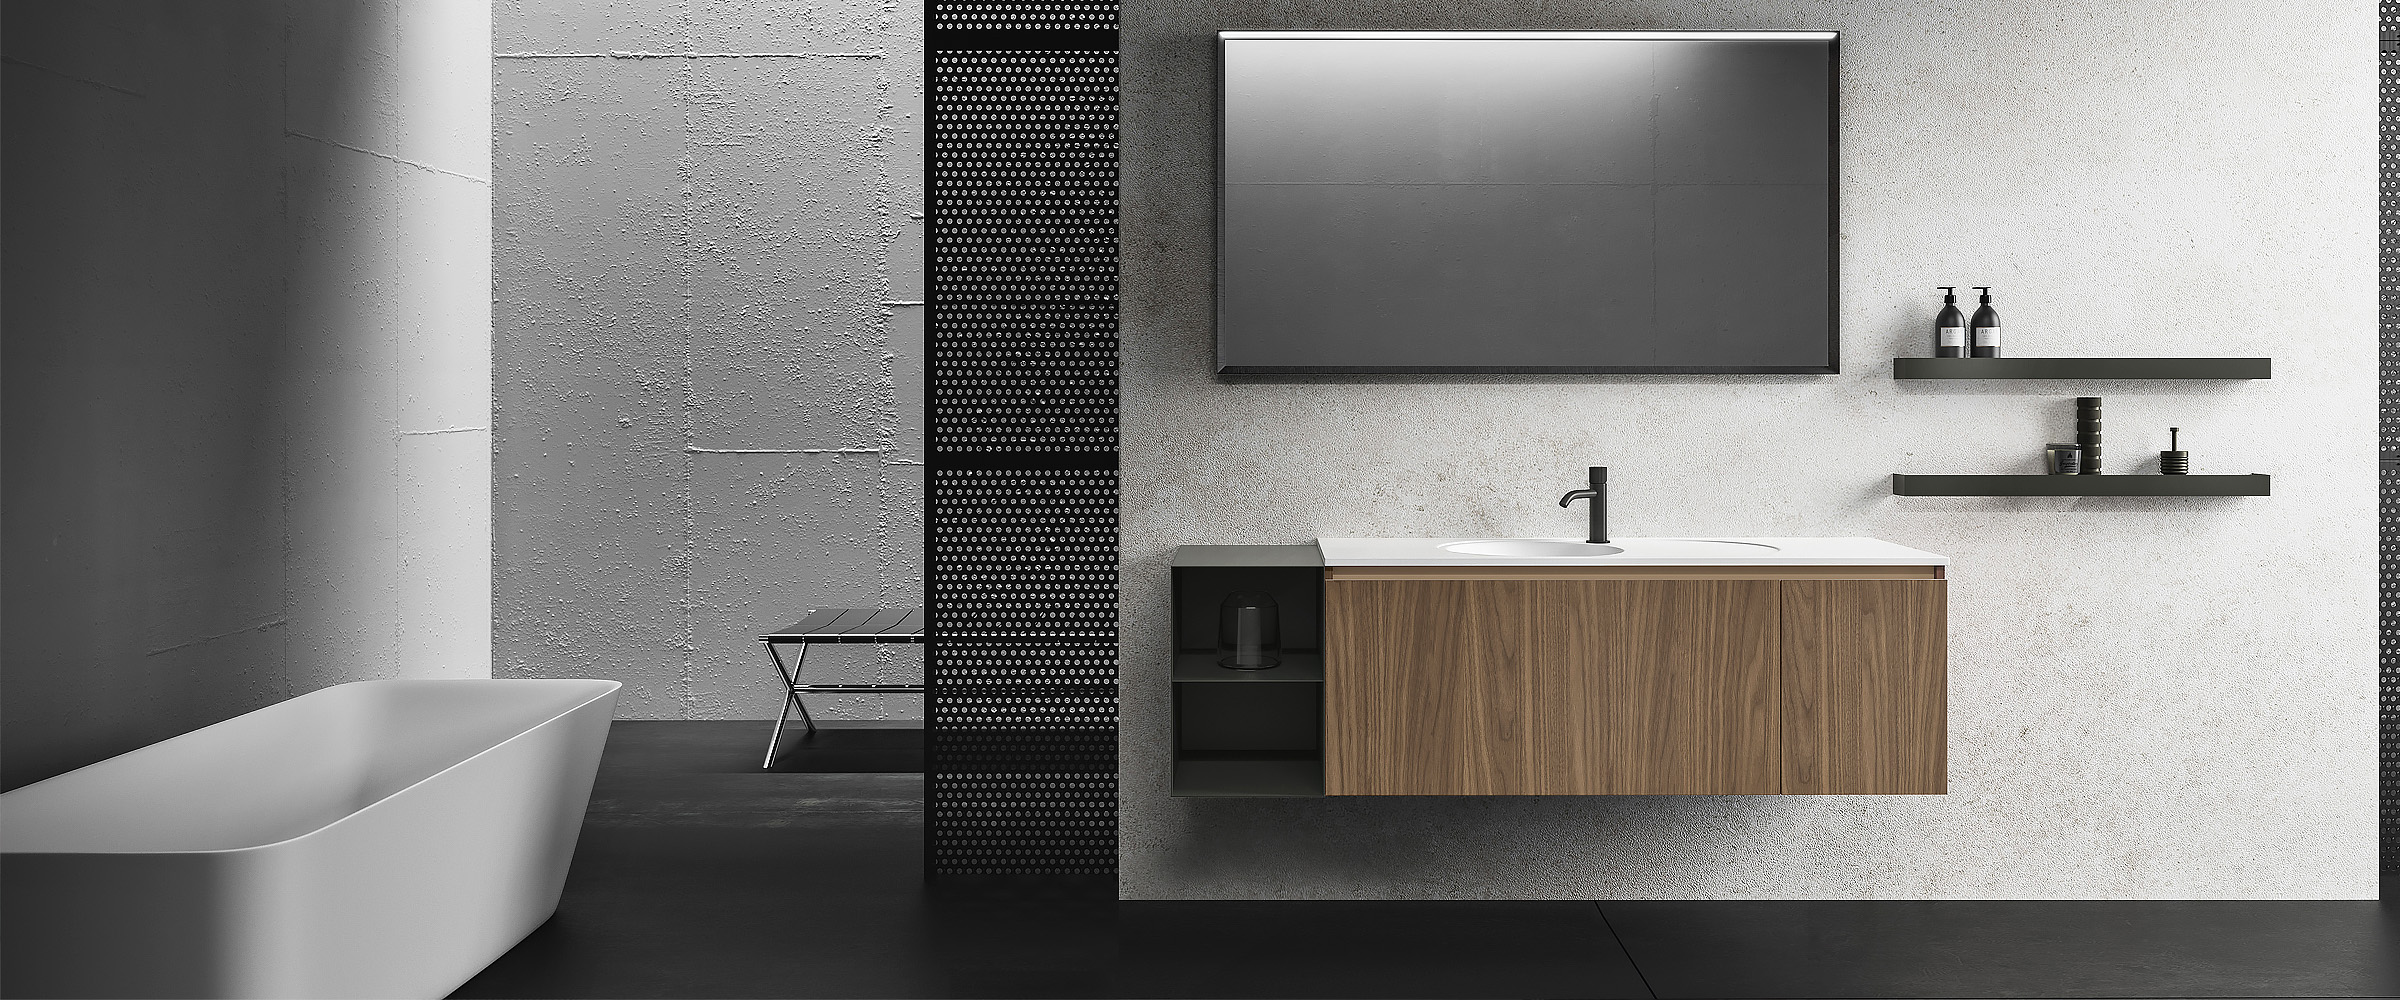 salle de bain minimaliste avec baignoire en marbre et meubles en bois